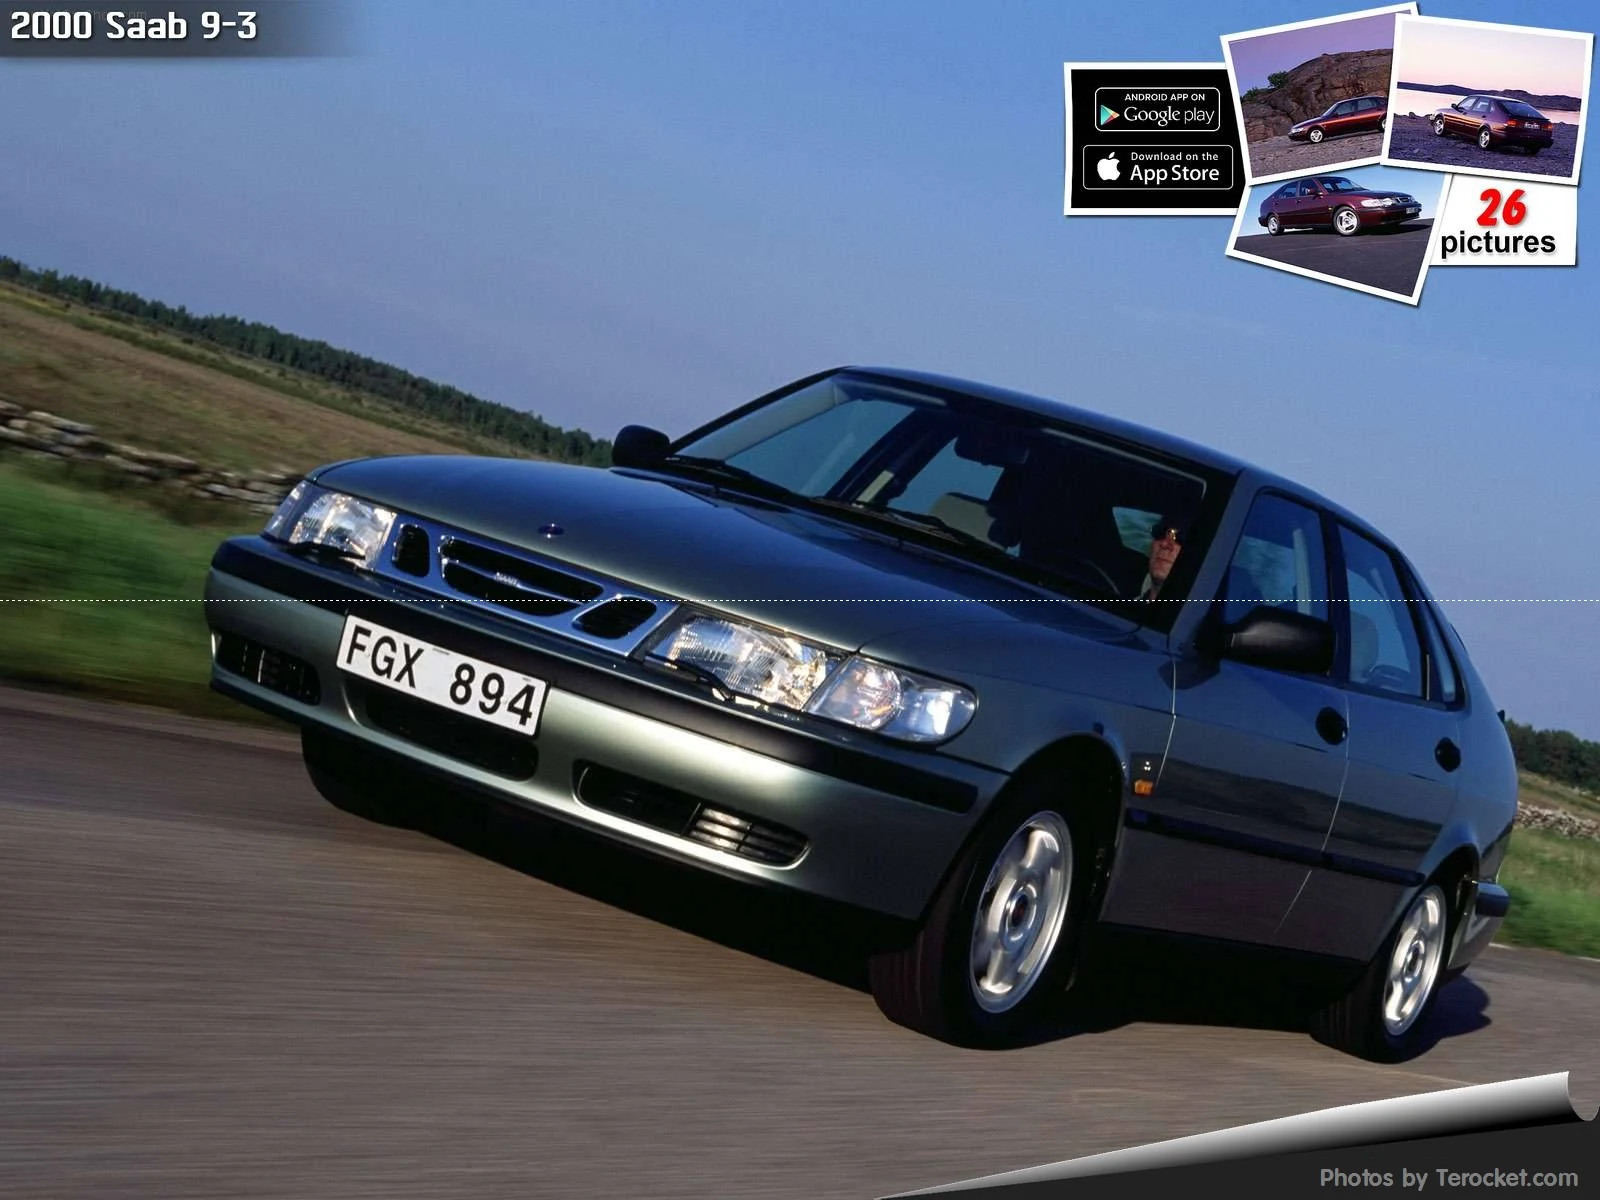 Hình ảnh xe ô tô Saab 9-3 2000 & nội ngoại thất